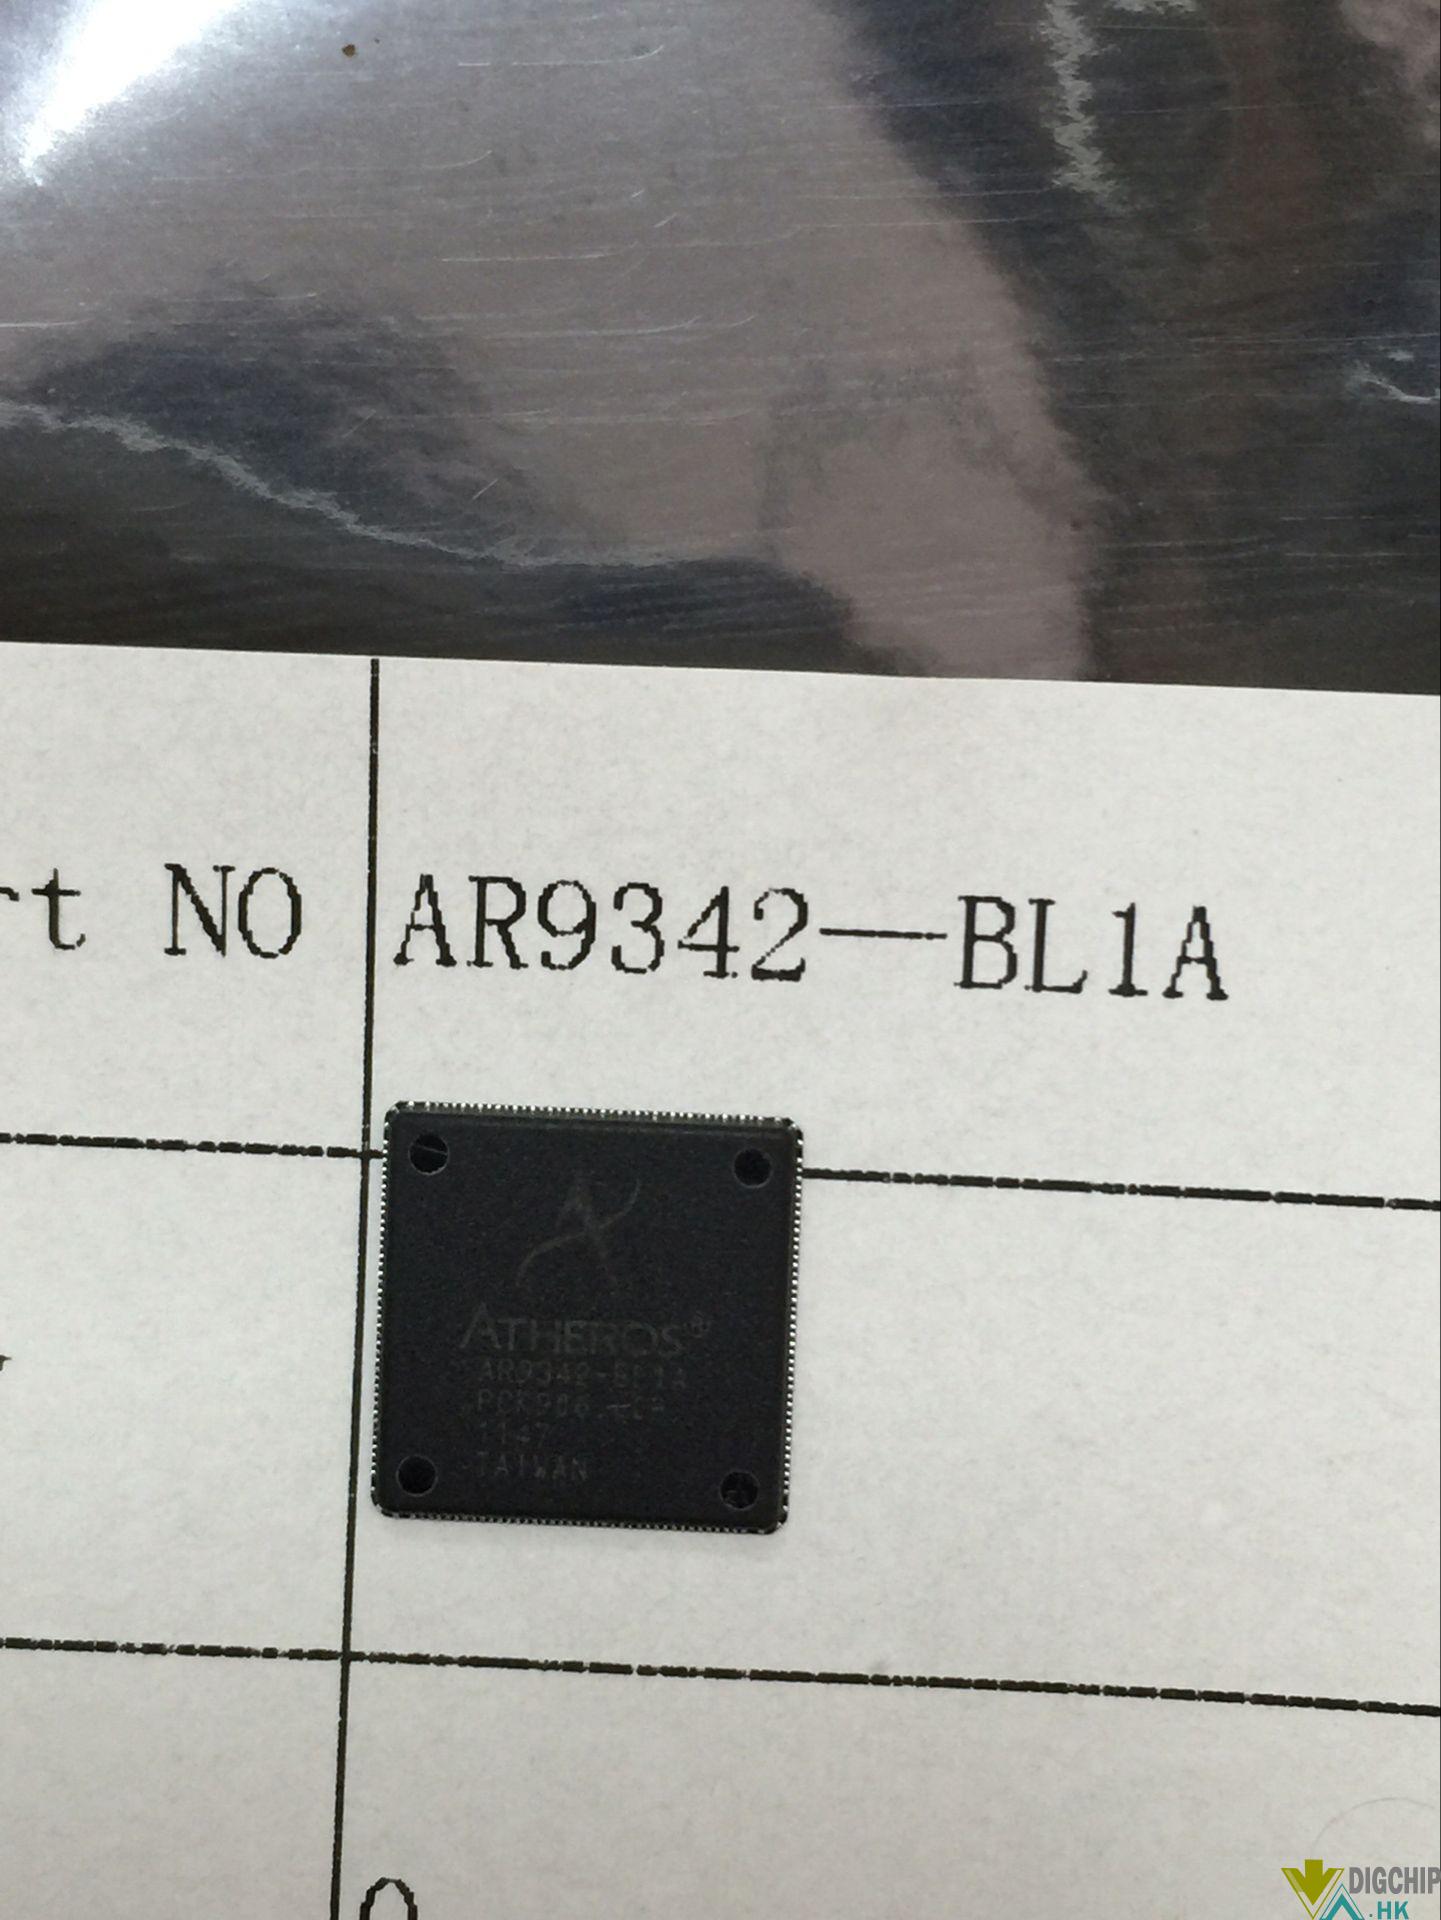 AR9342-BL1A